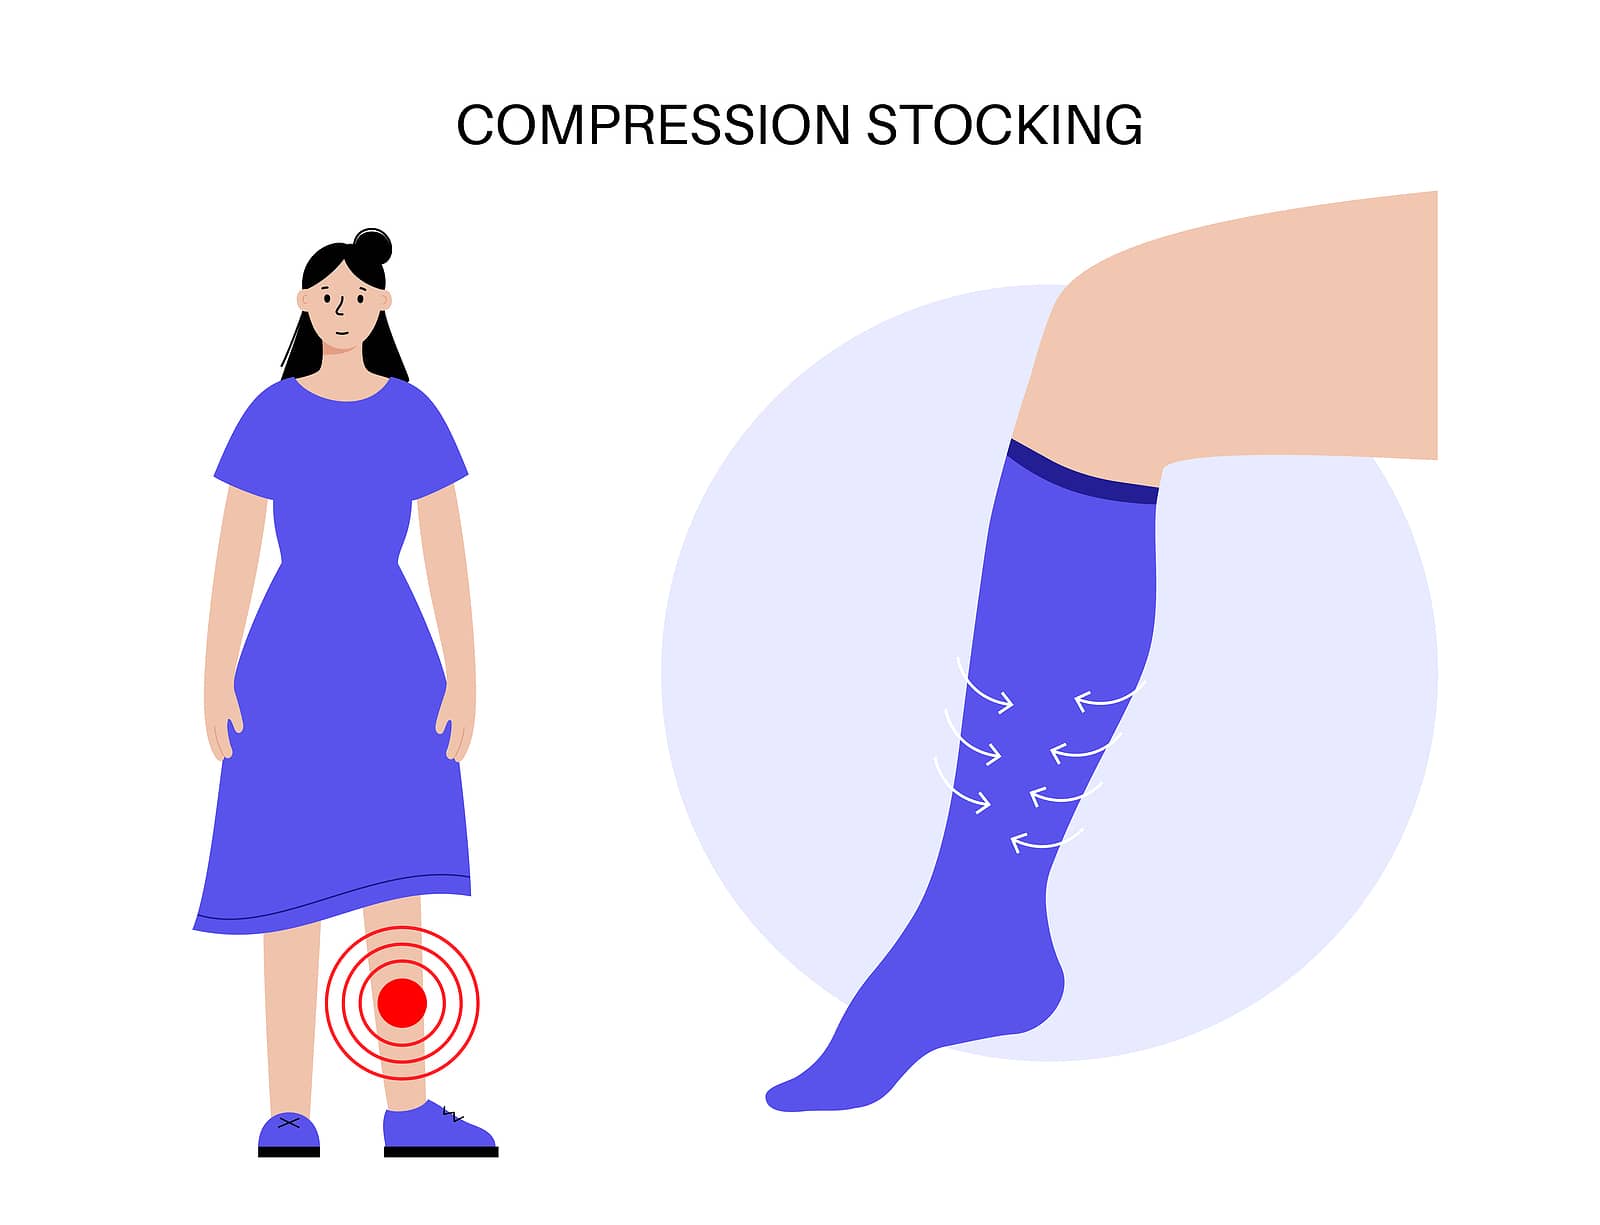 Medicare Coverage for Compression Socks